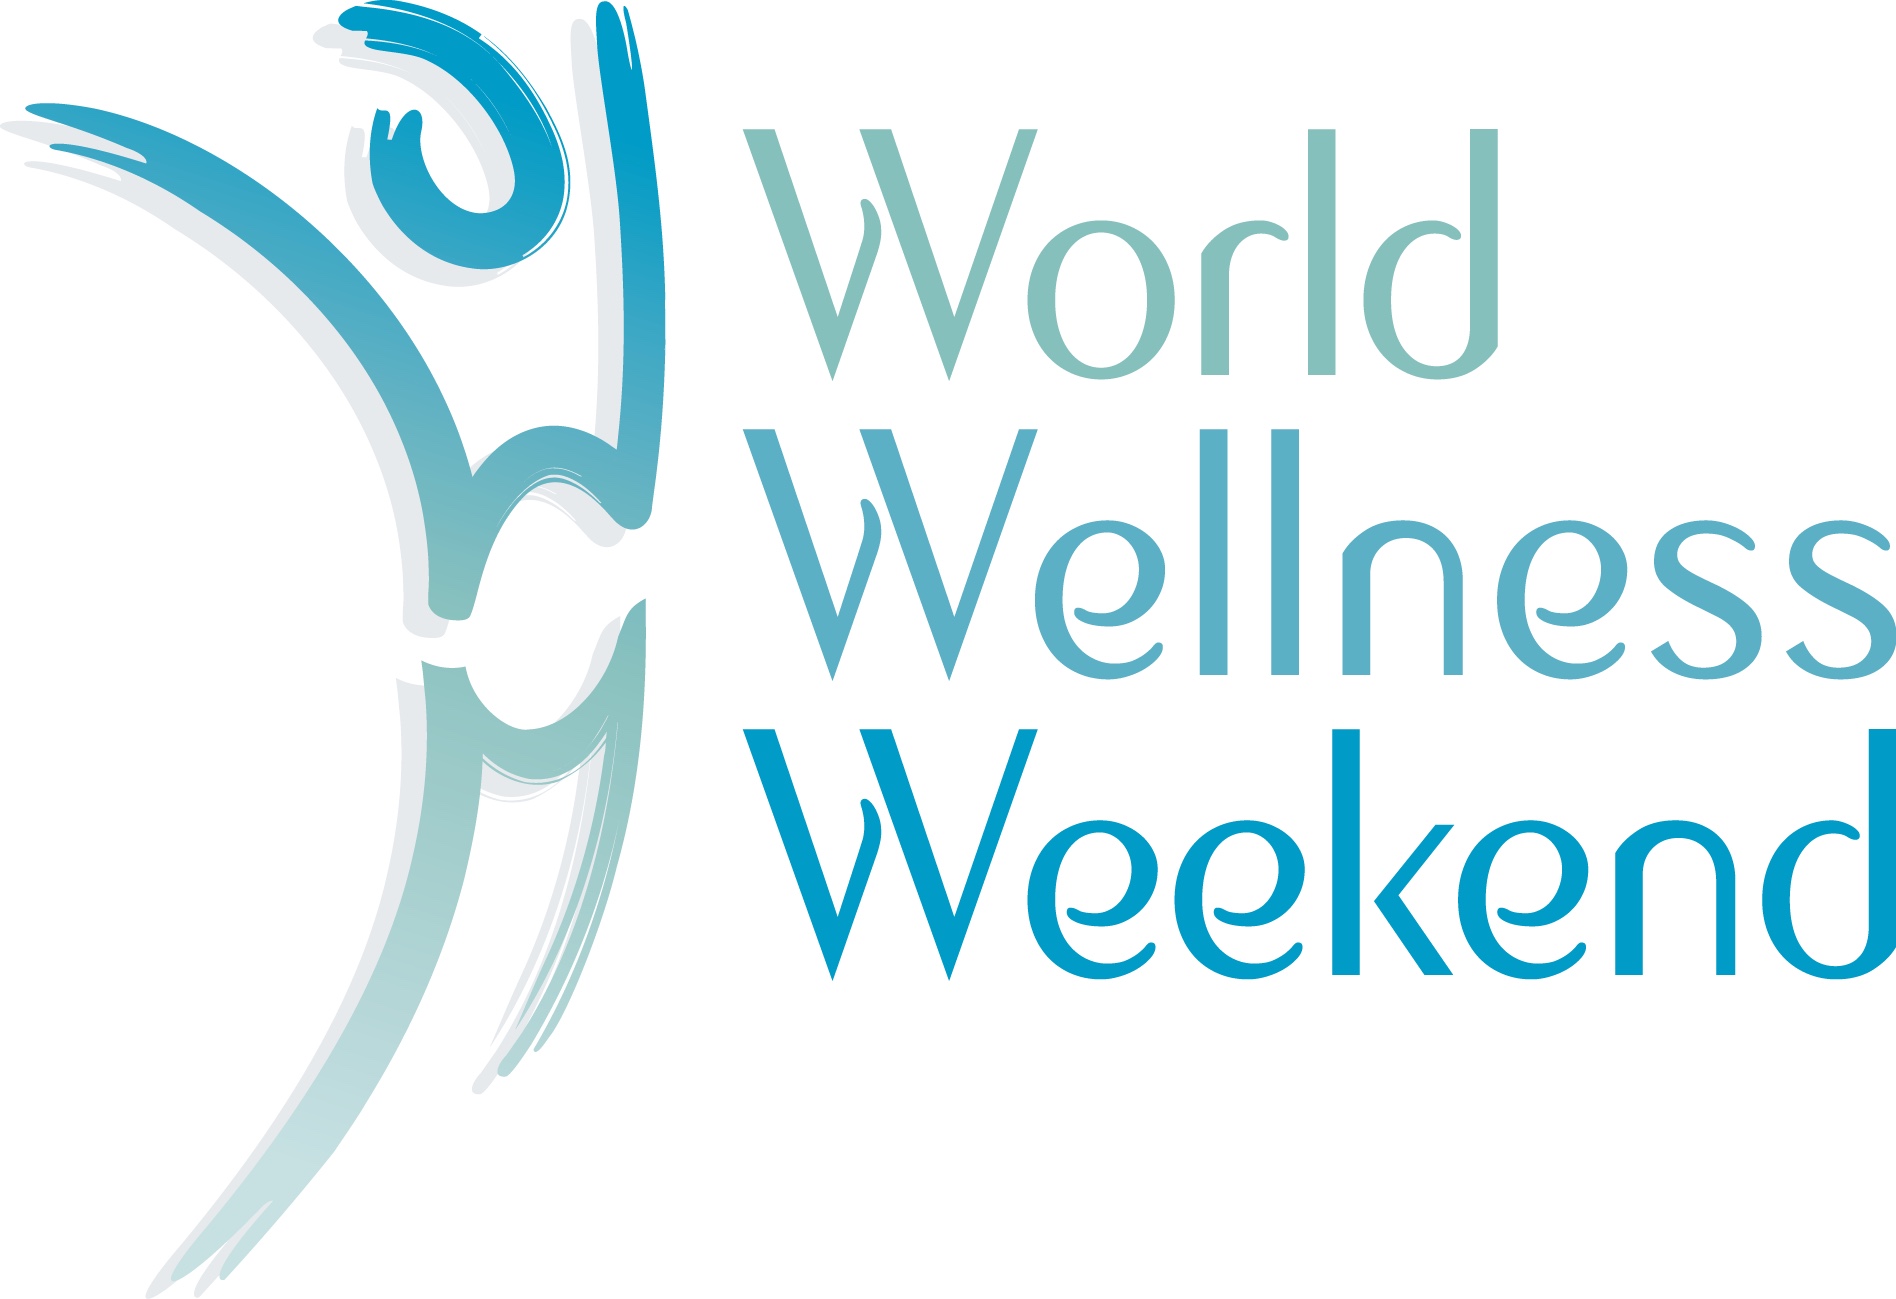 World Wellness Weekend